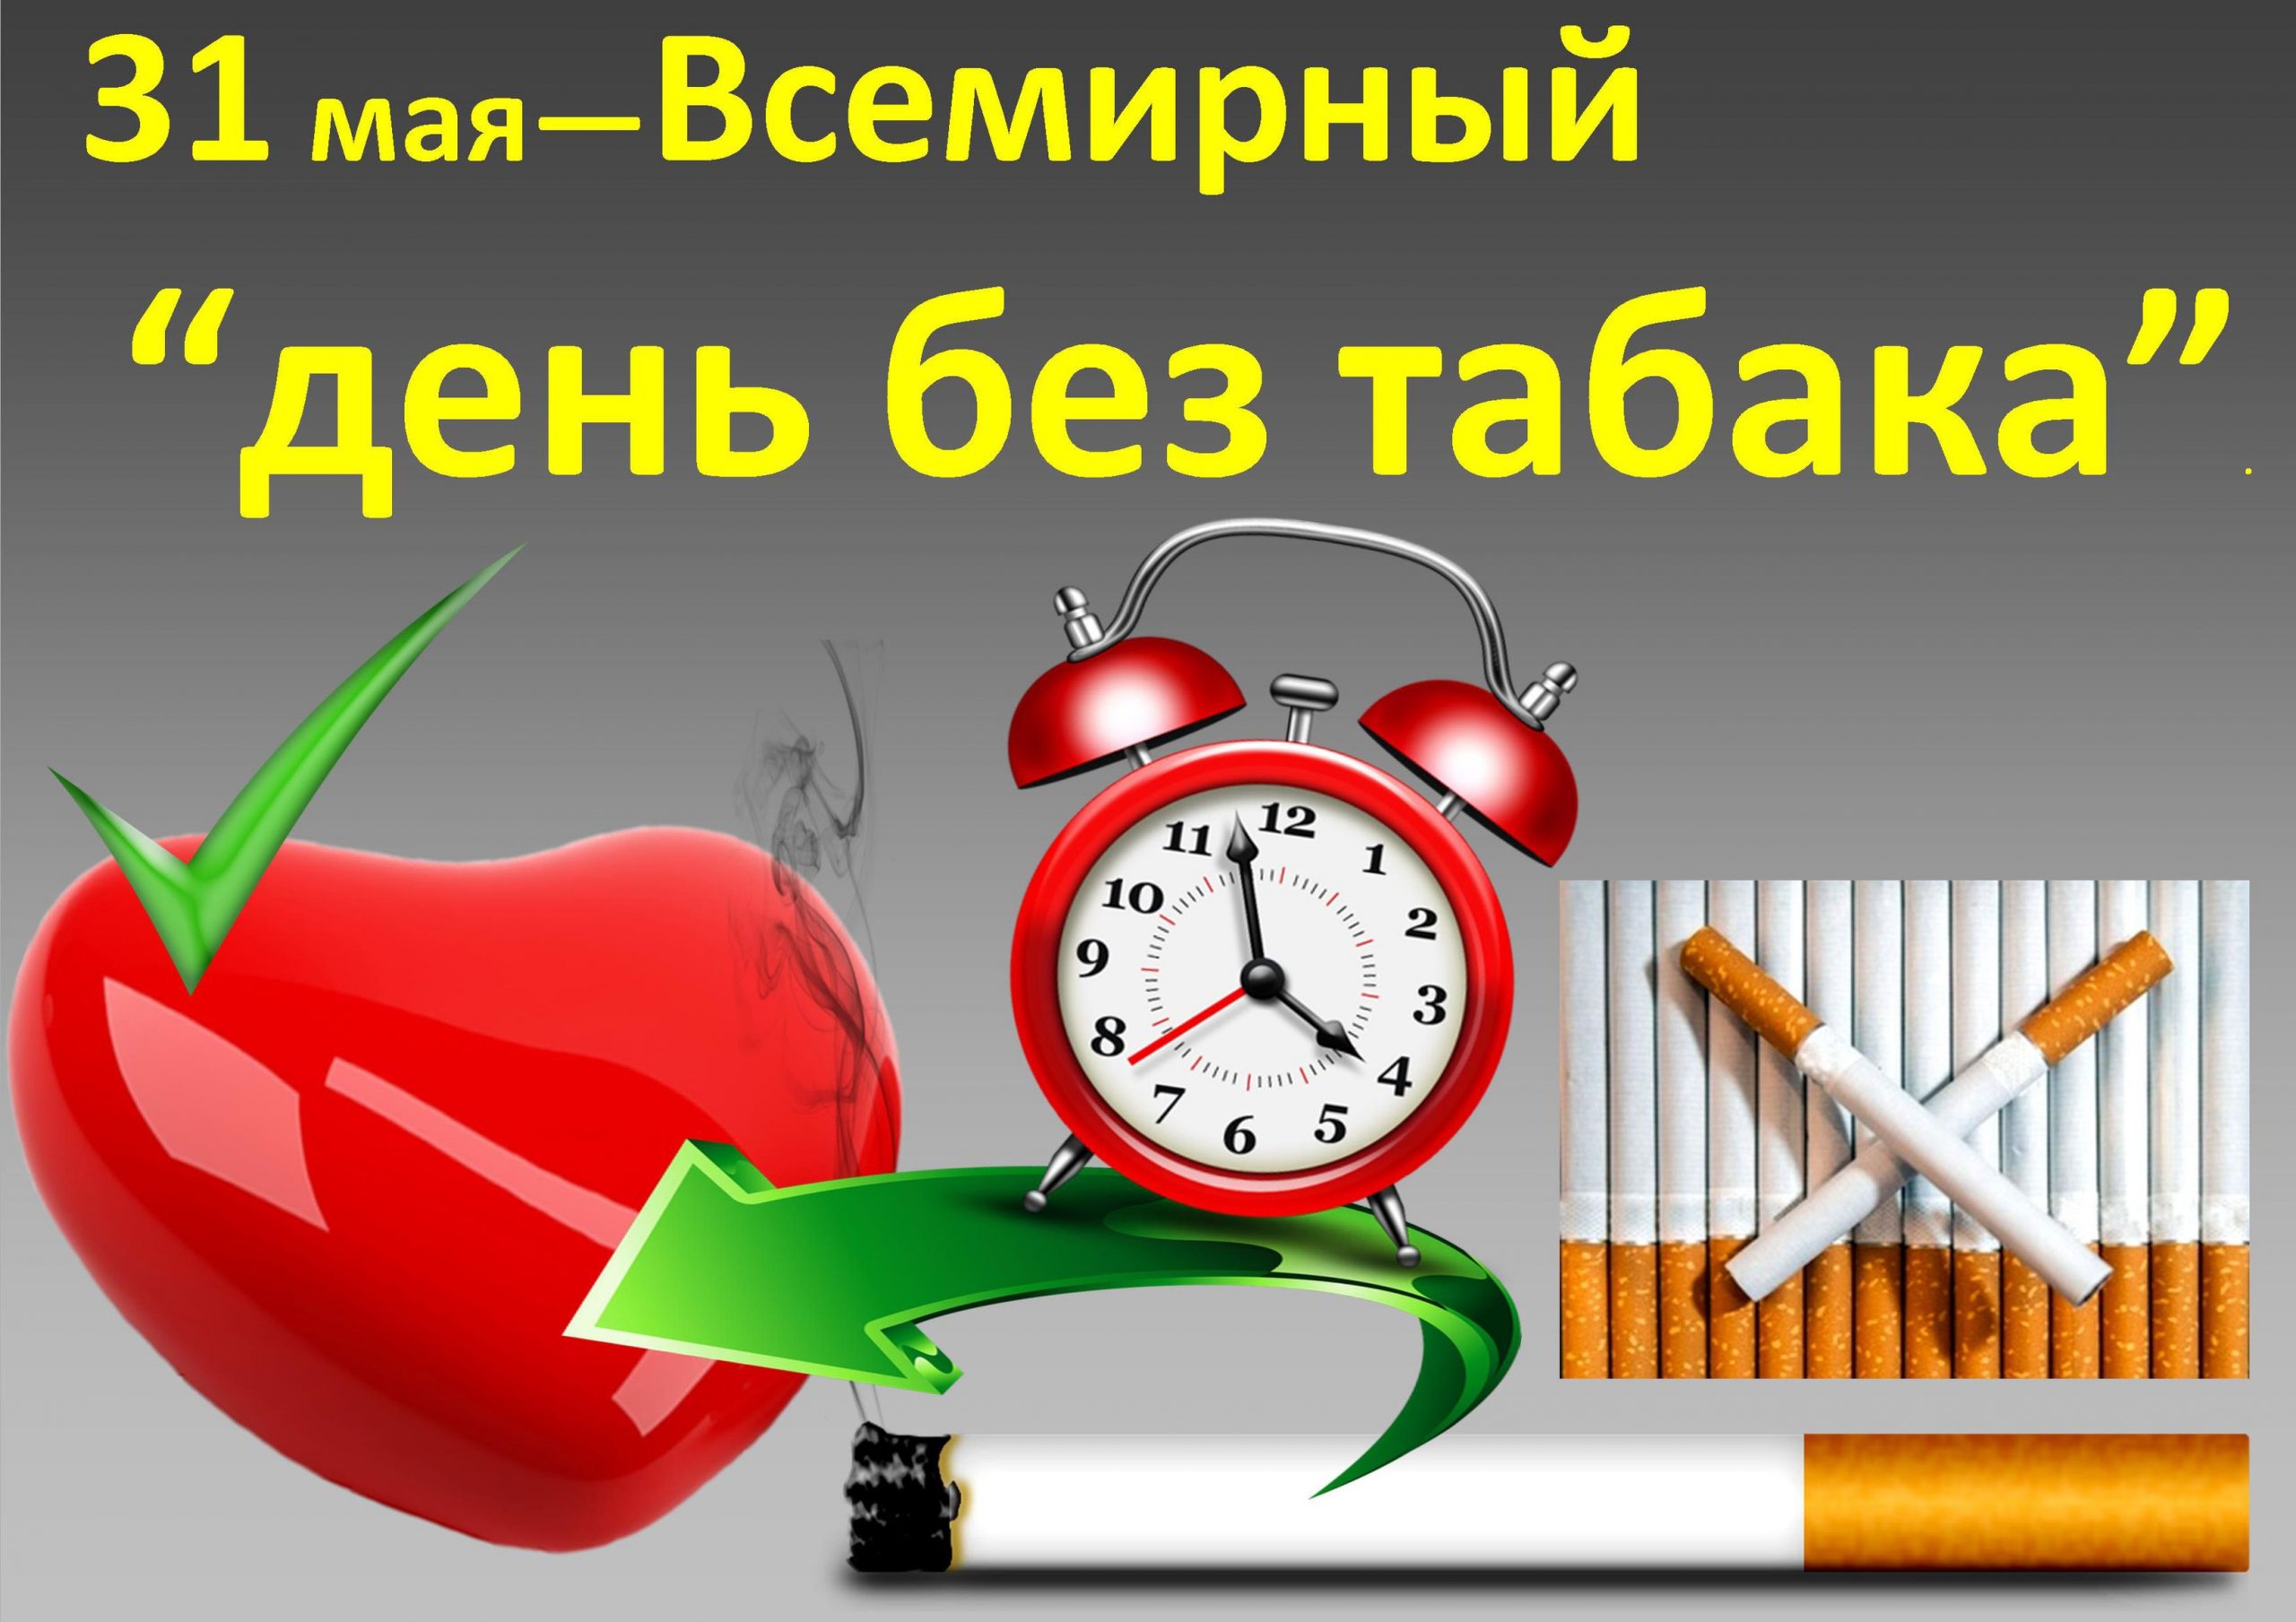 31 мая - Всемирный день без табака!.